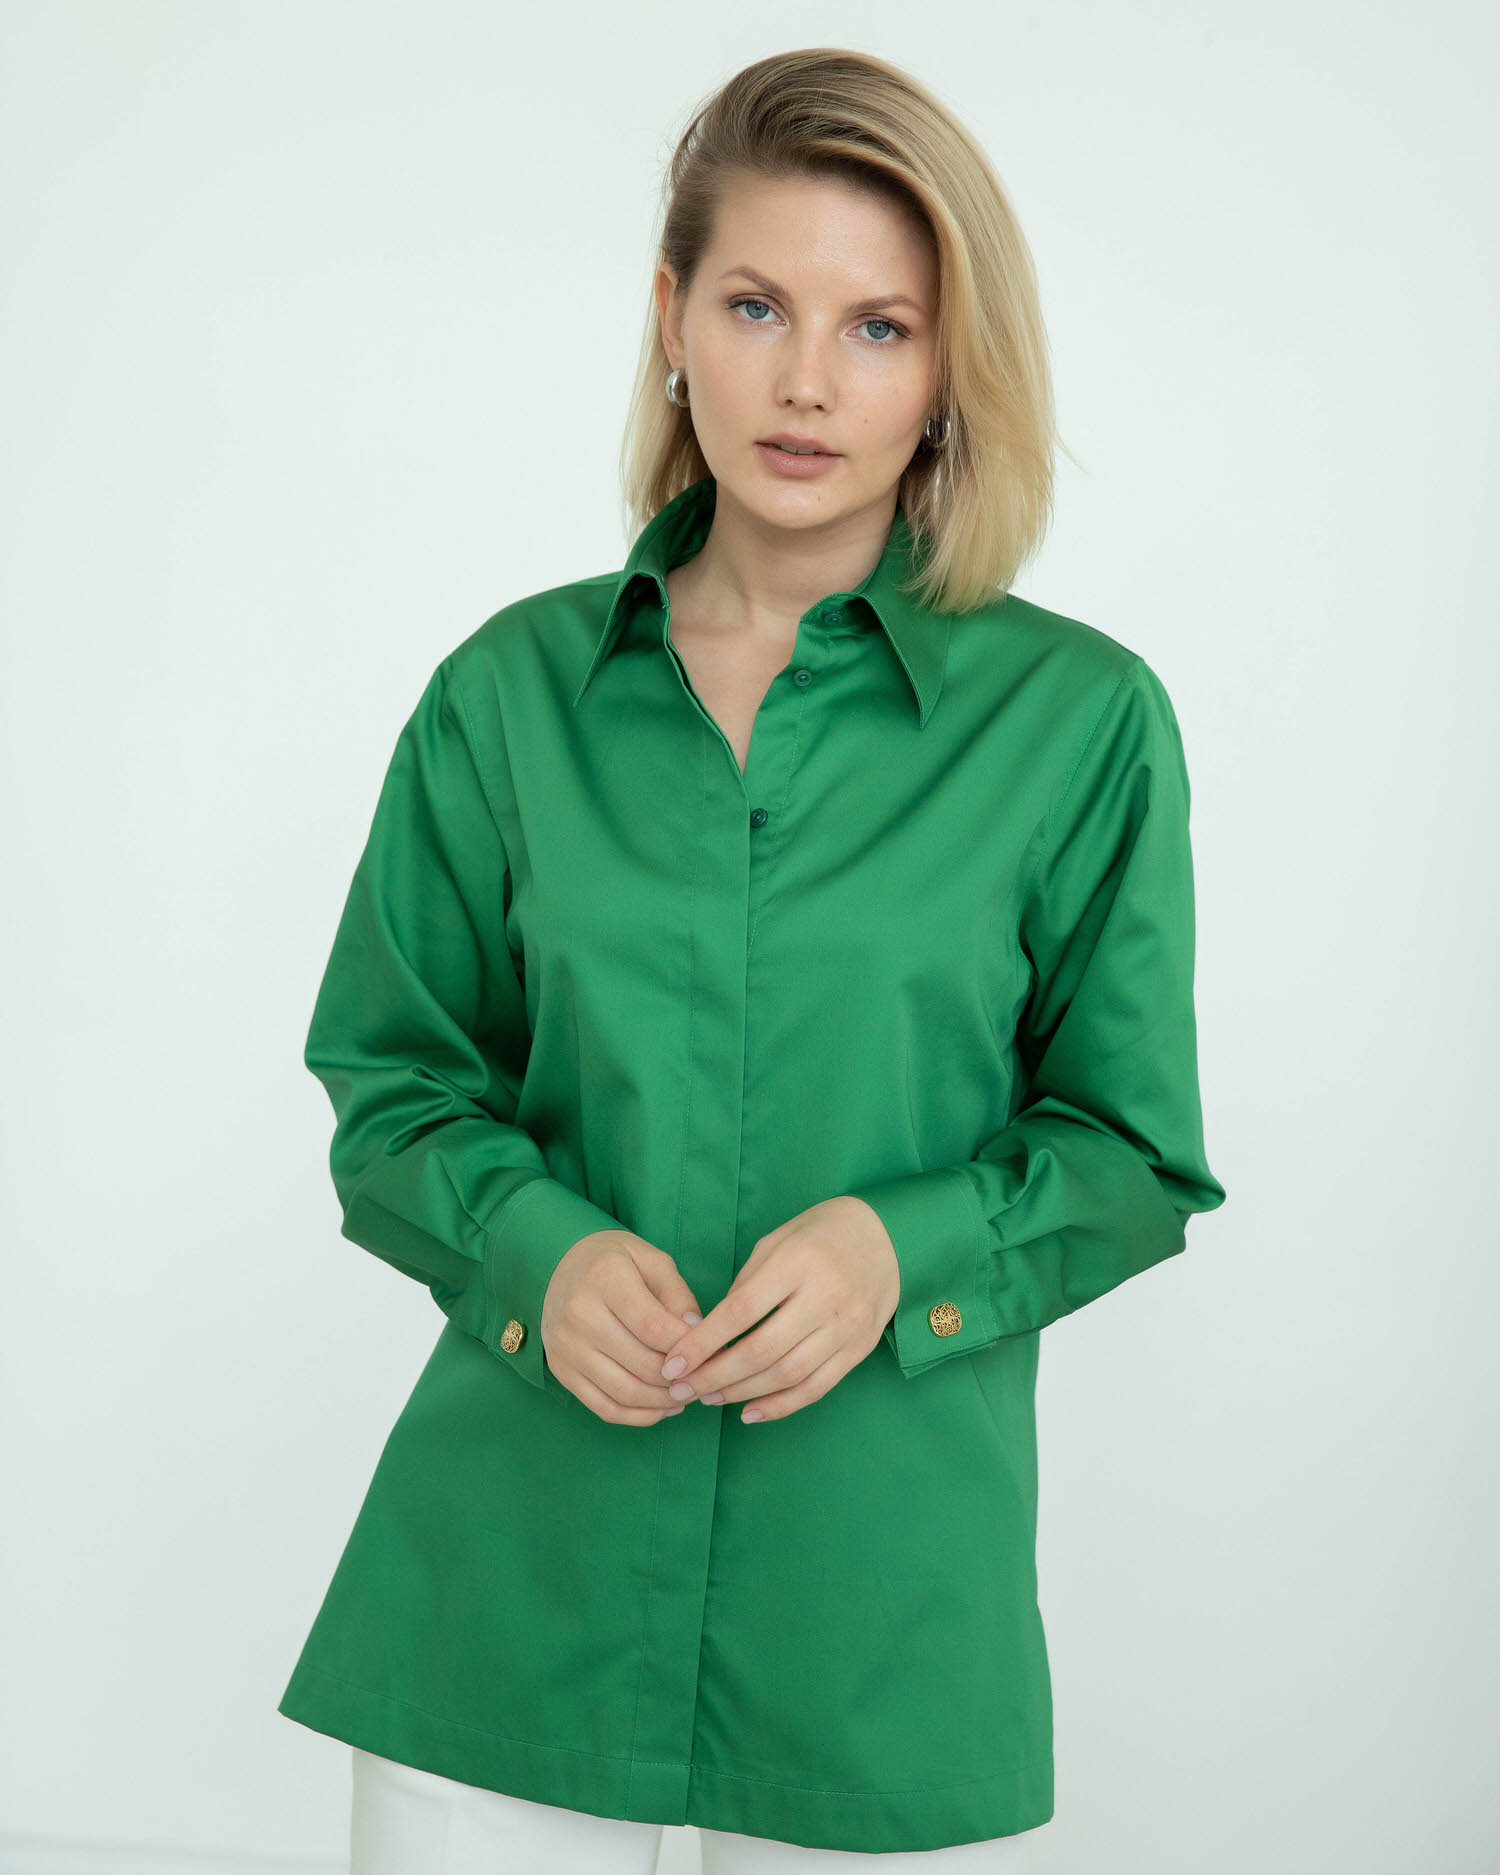 Женская рубашка с супатной застежкой зелёная - 8289 от byME 